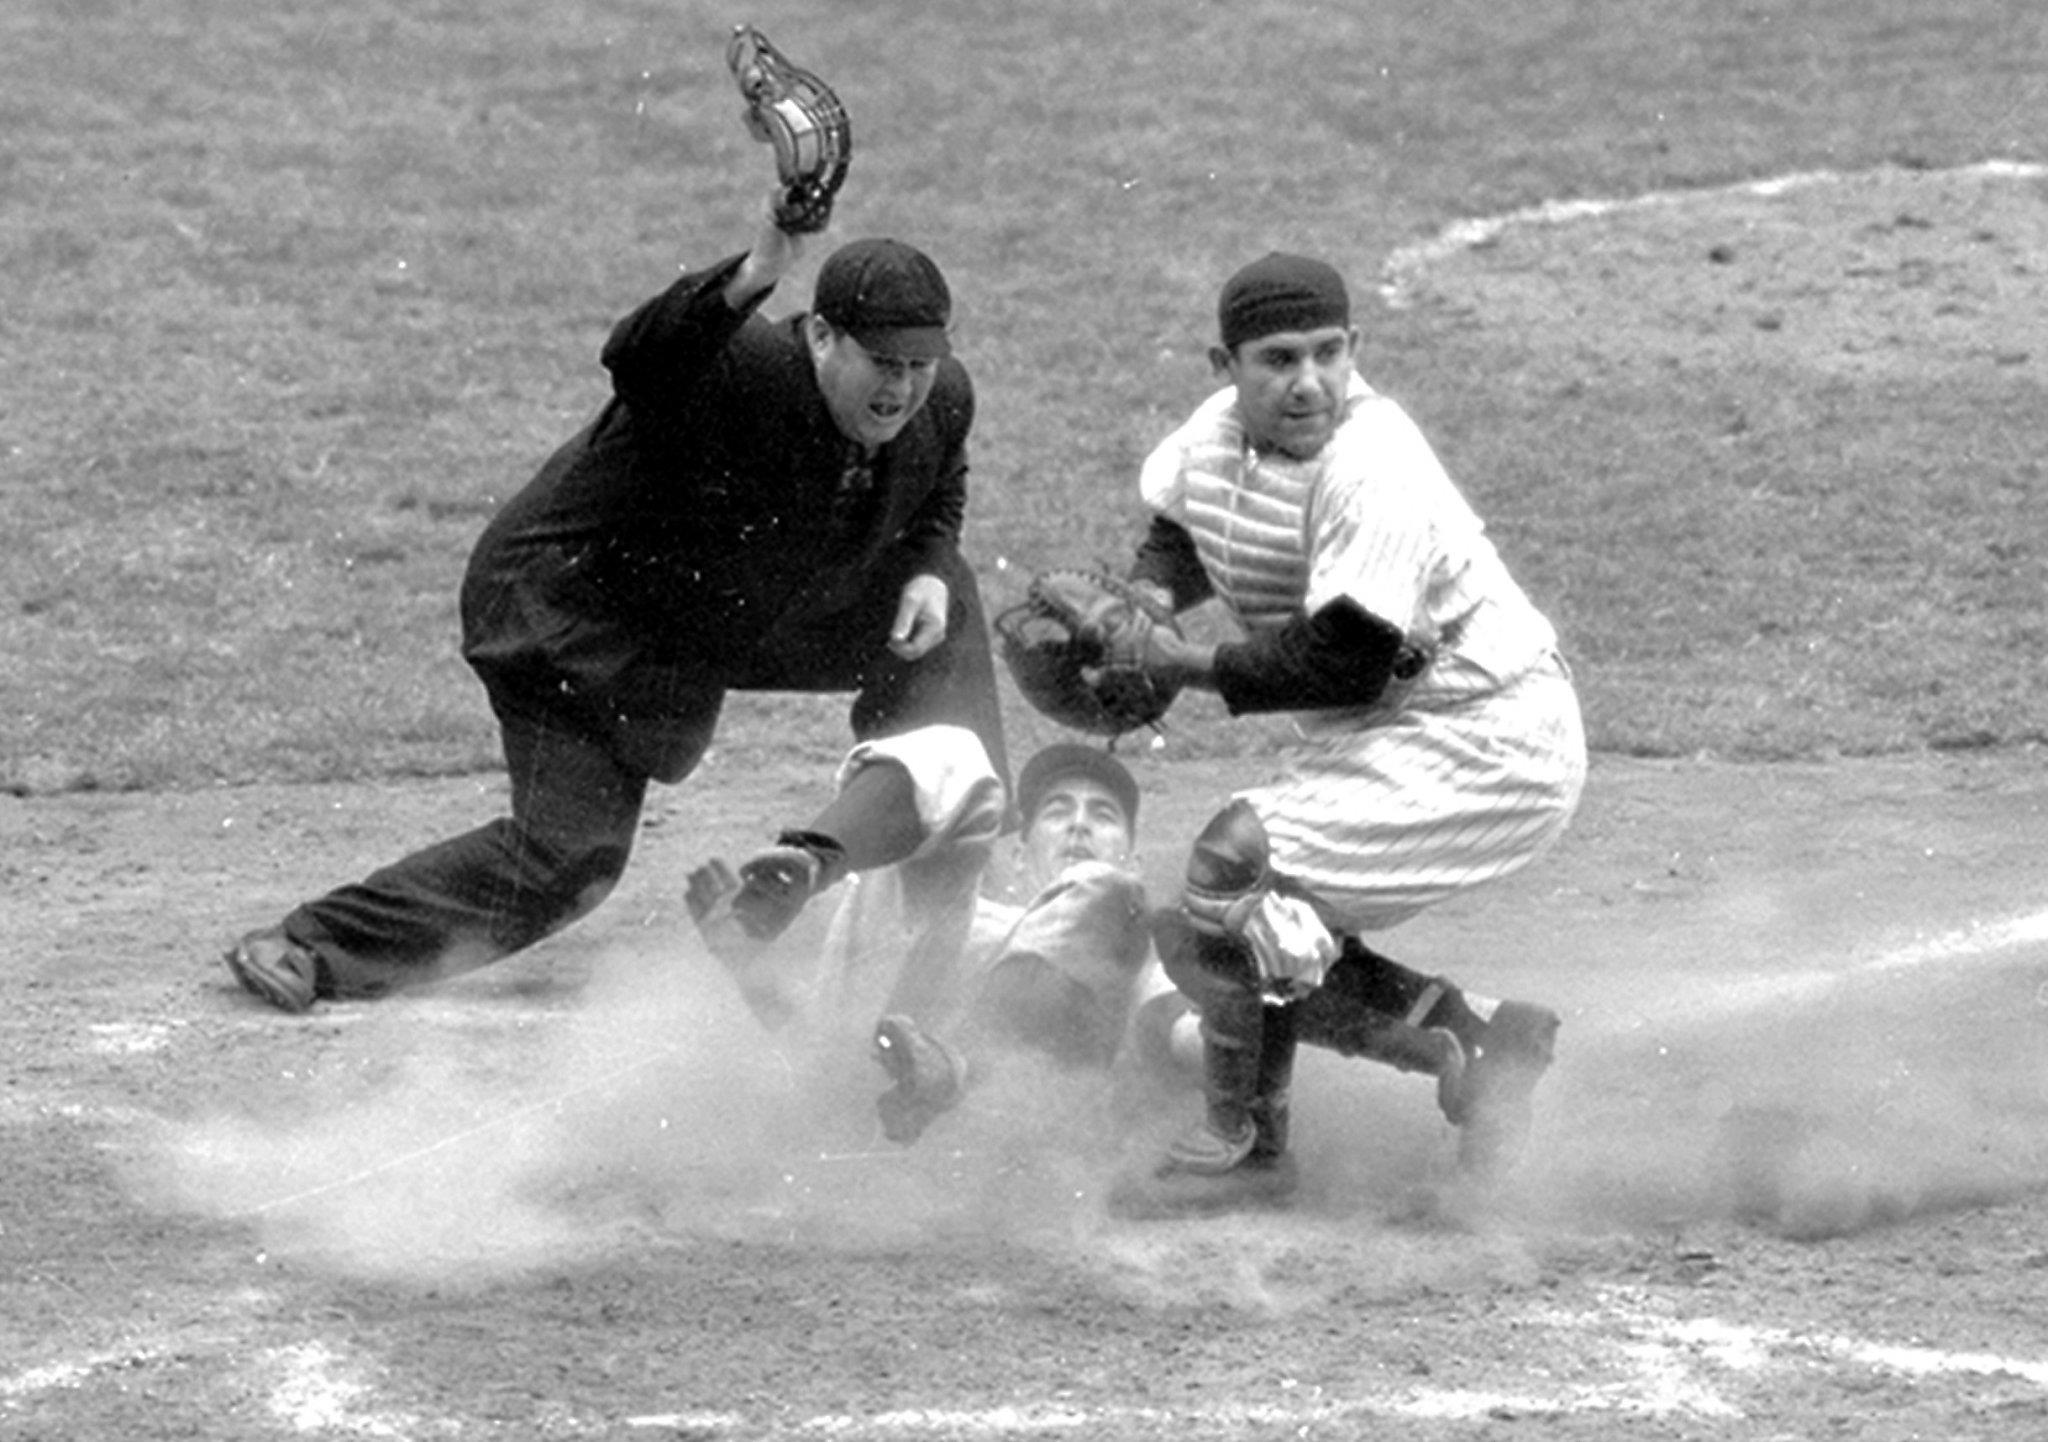 Yogi Berra, Hall of Famer and Yankees great, dies at 90